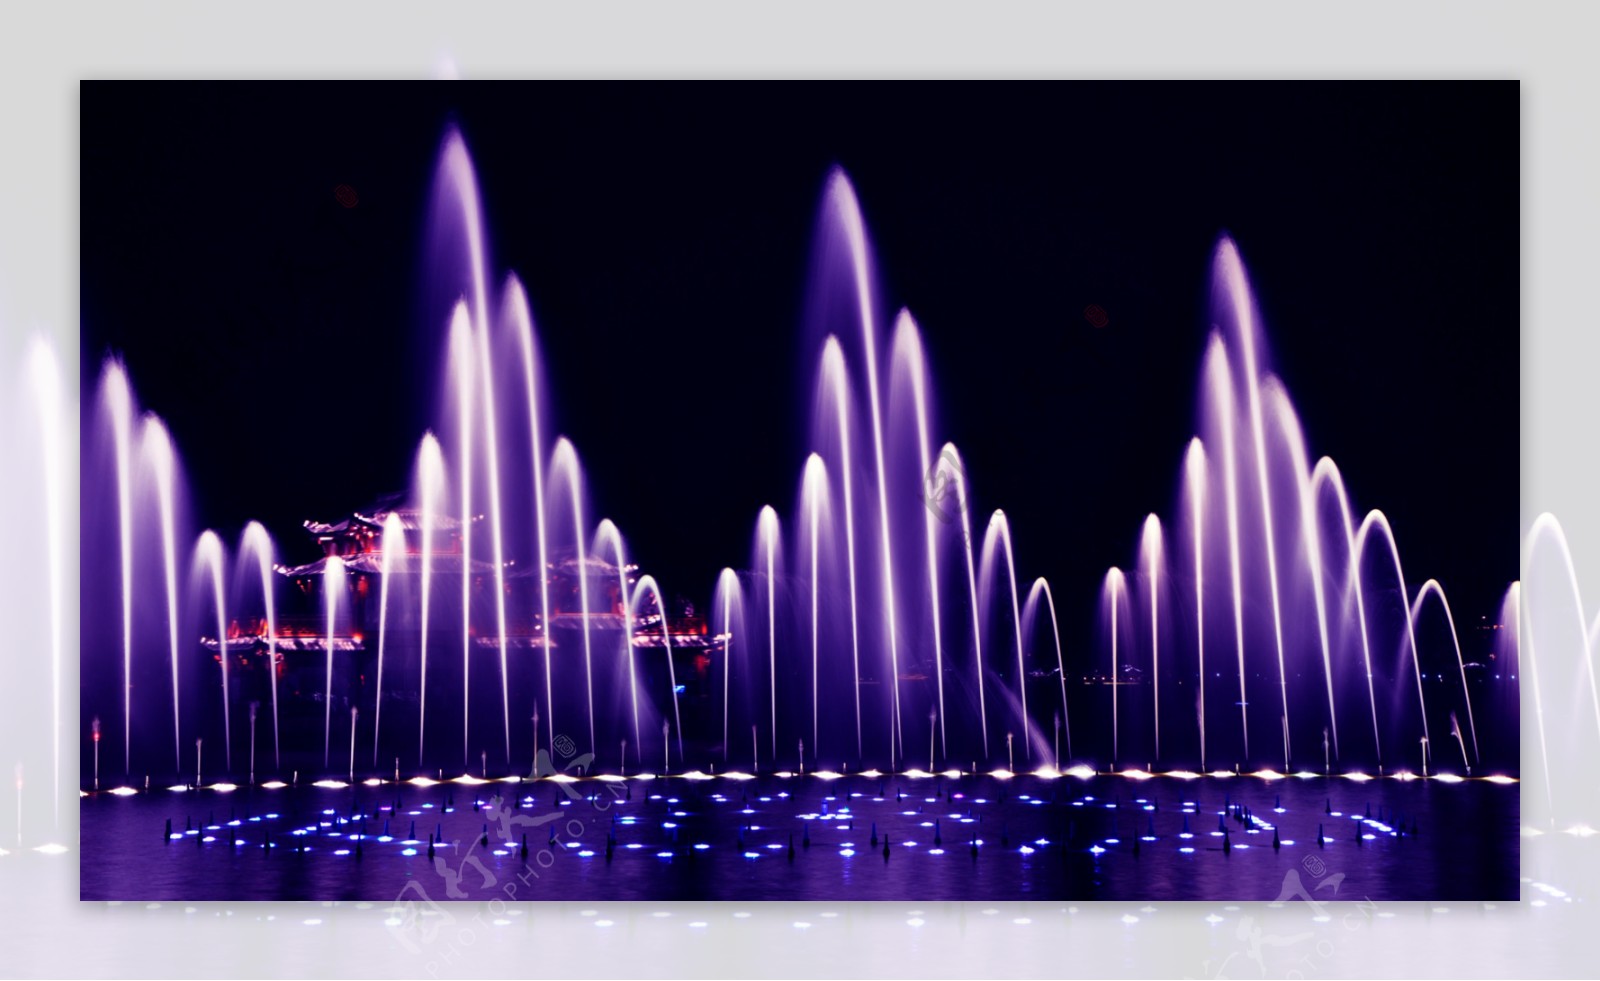 西湖音乐喷泉图片